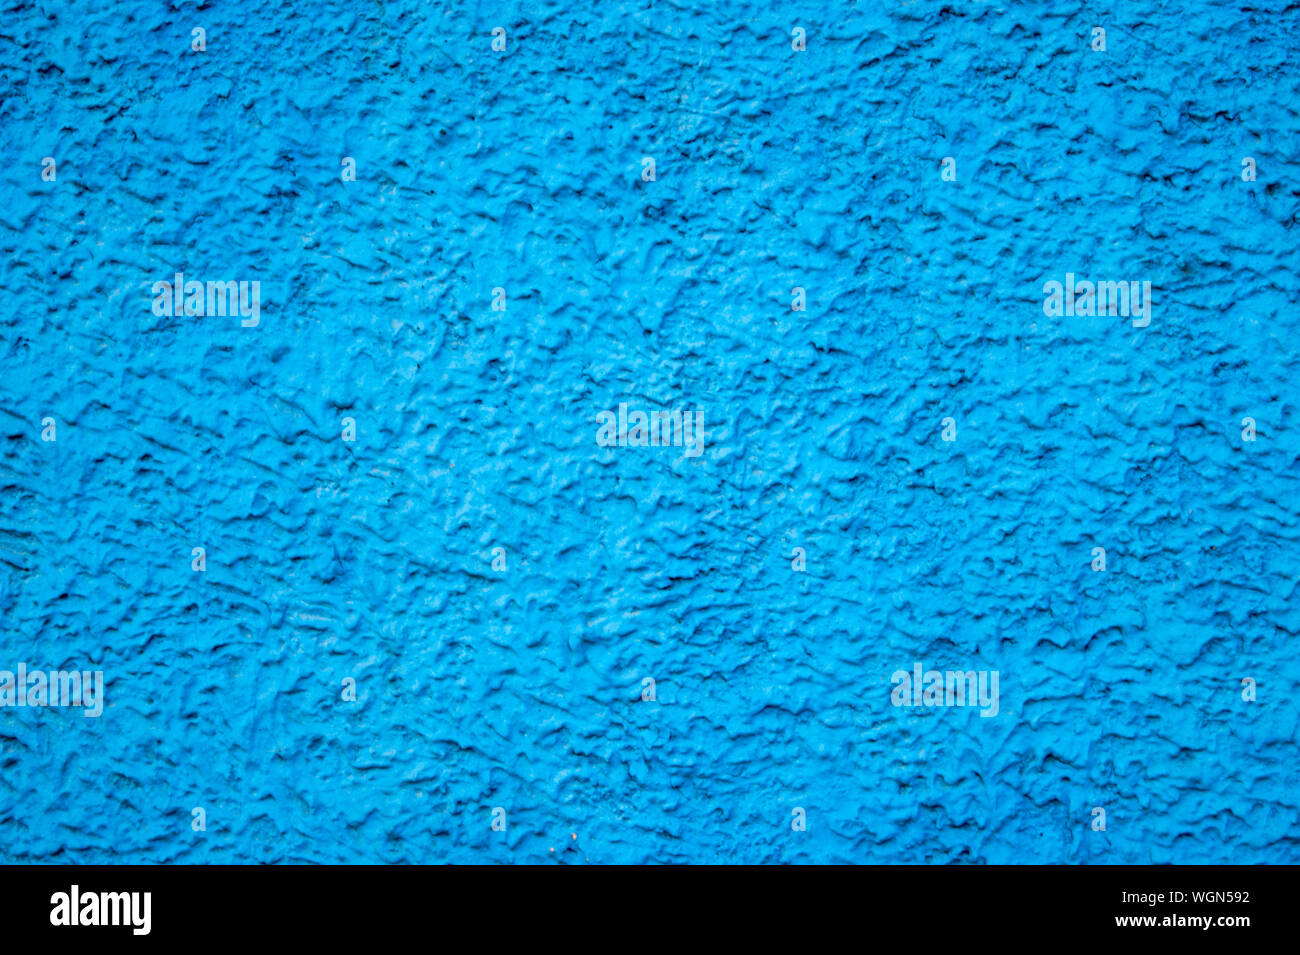 Textur der Betonwand mit dekorativen Putz - Foto. Farbe blau. Granularität, Rauheit. Fassade. Hintergrund. Stockfoto